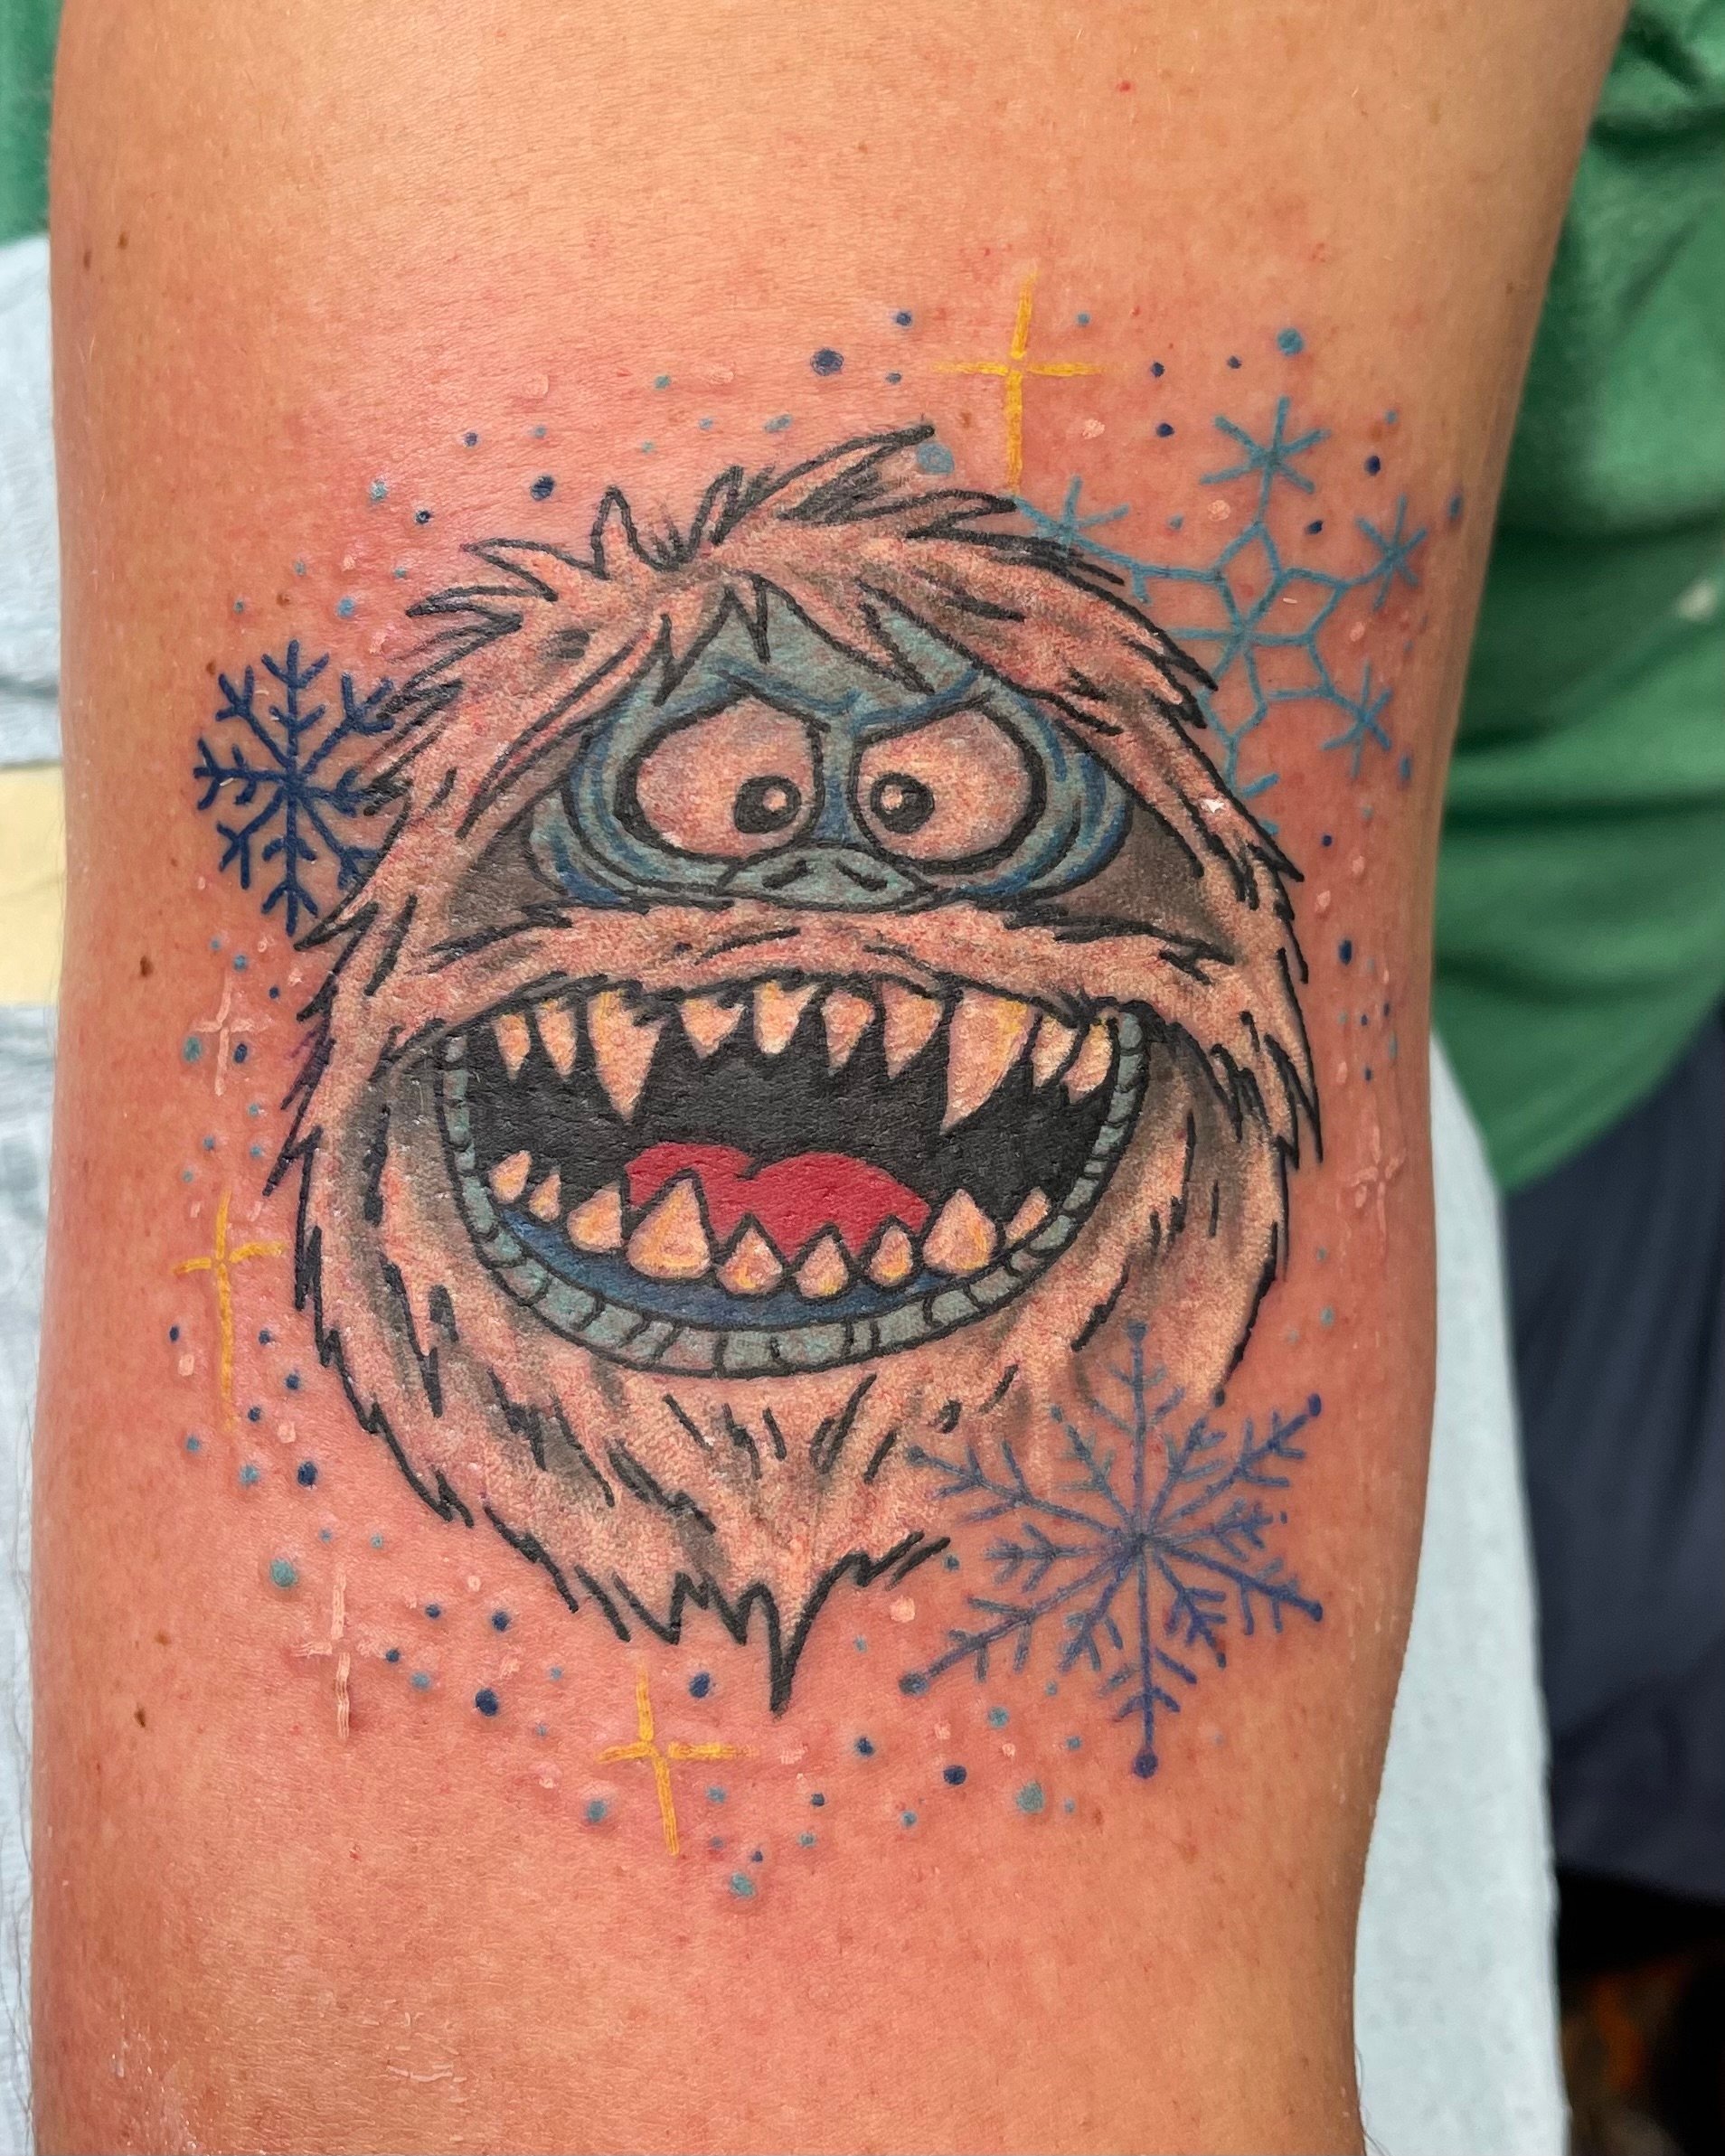 abominable snowman tattoo